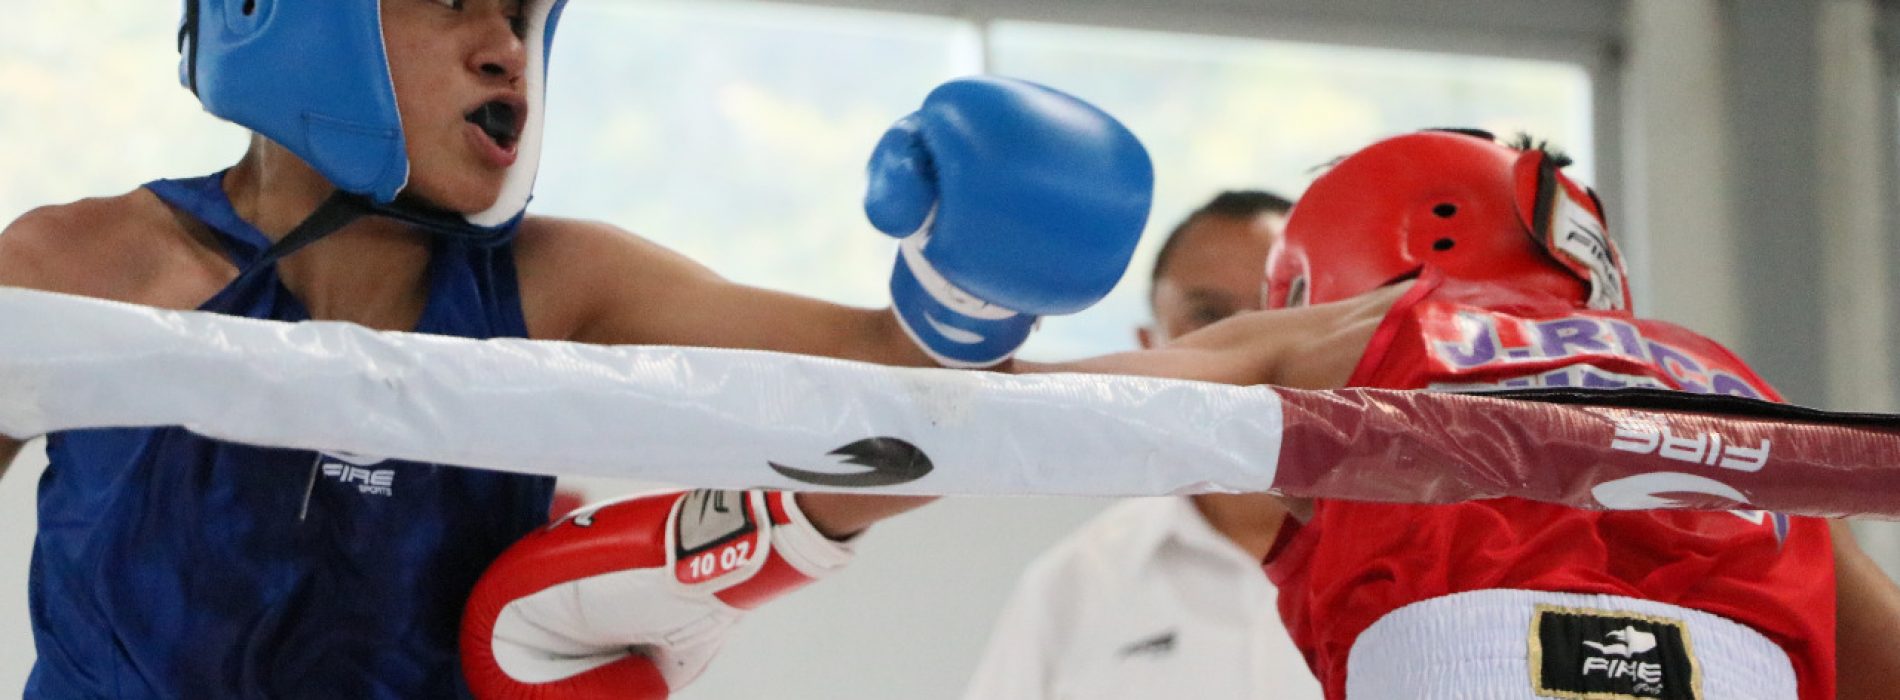 Son 18 los boxeadores que integran la selección oaxaqueña para Juegos Nacionales